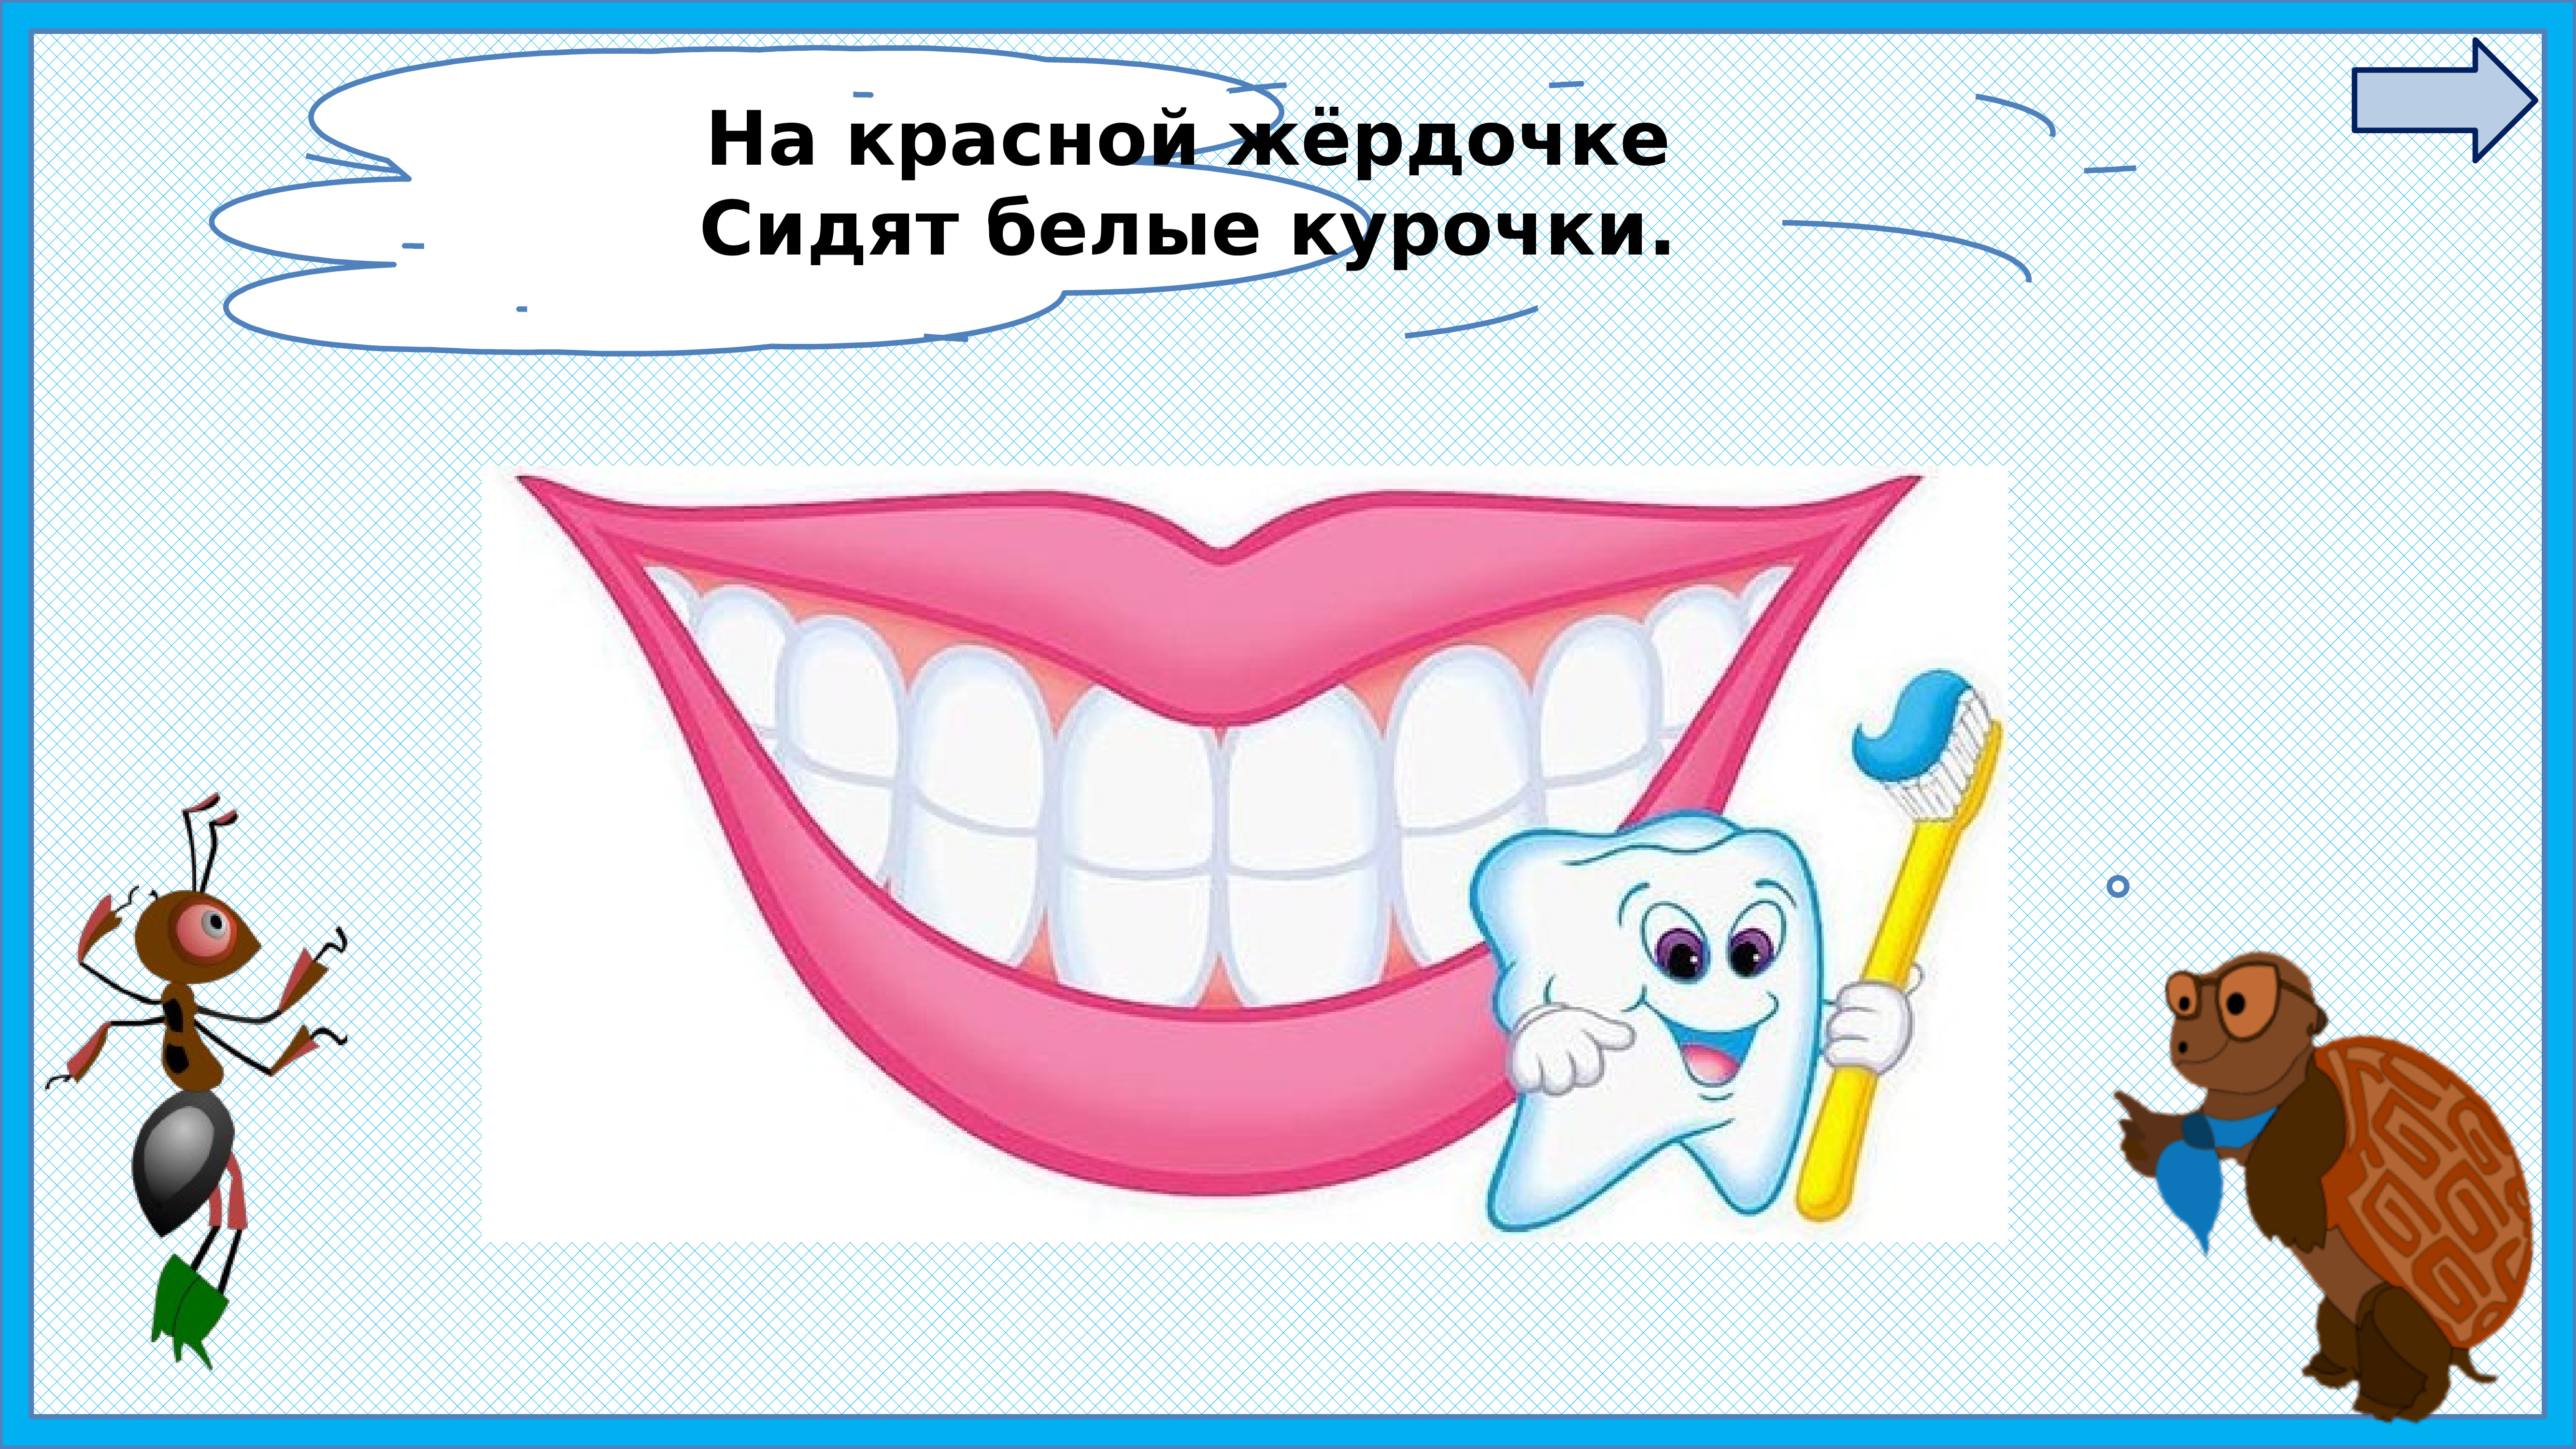 картинки чтение мигунова почему надо чистить зубы